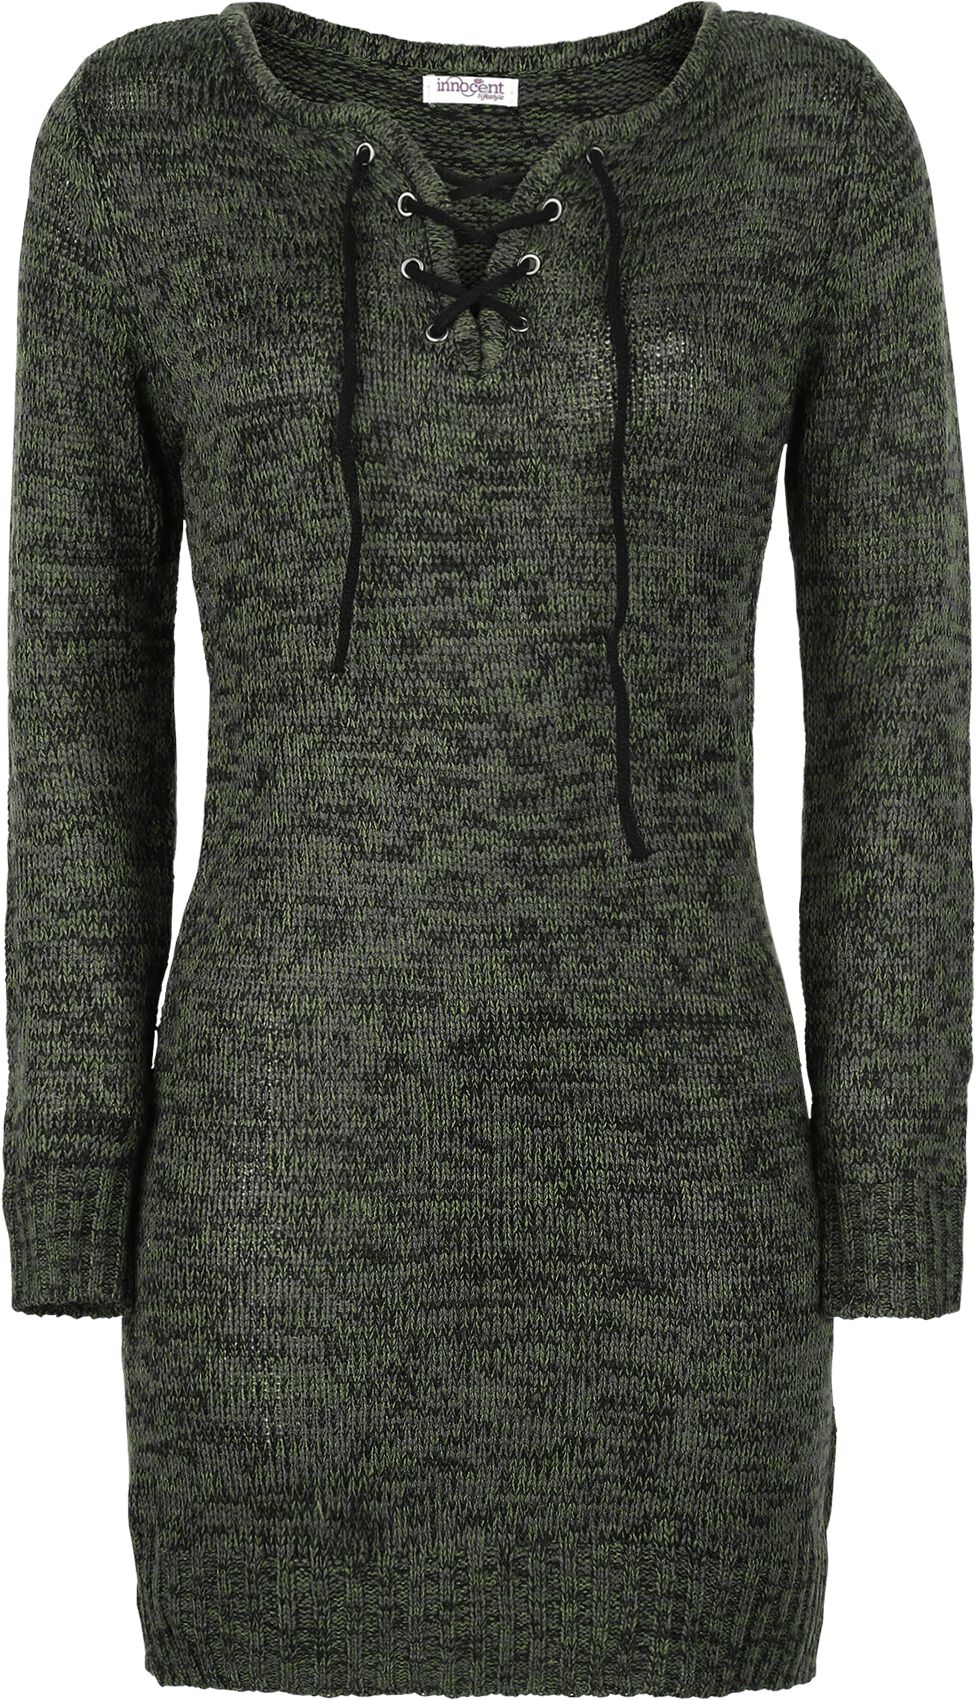 Pull tricoté de Innocent - Débardeur Lana - S à XL - pour Femme - olive